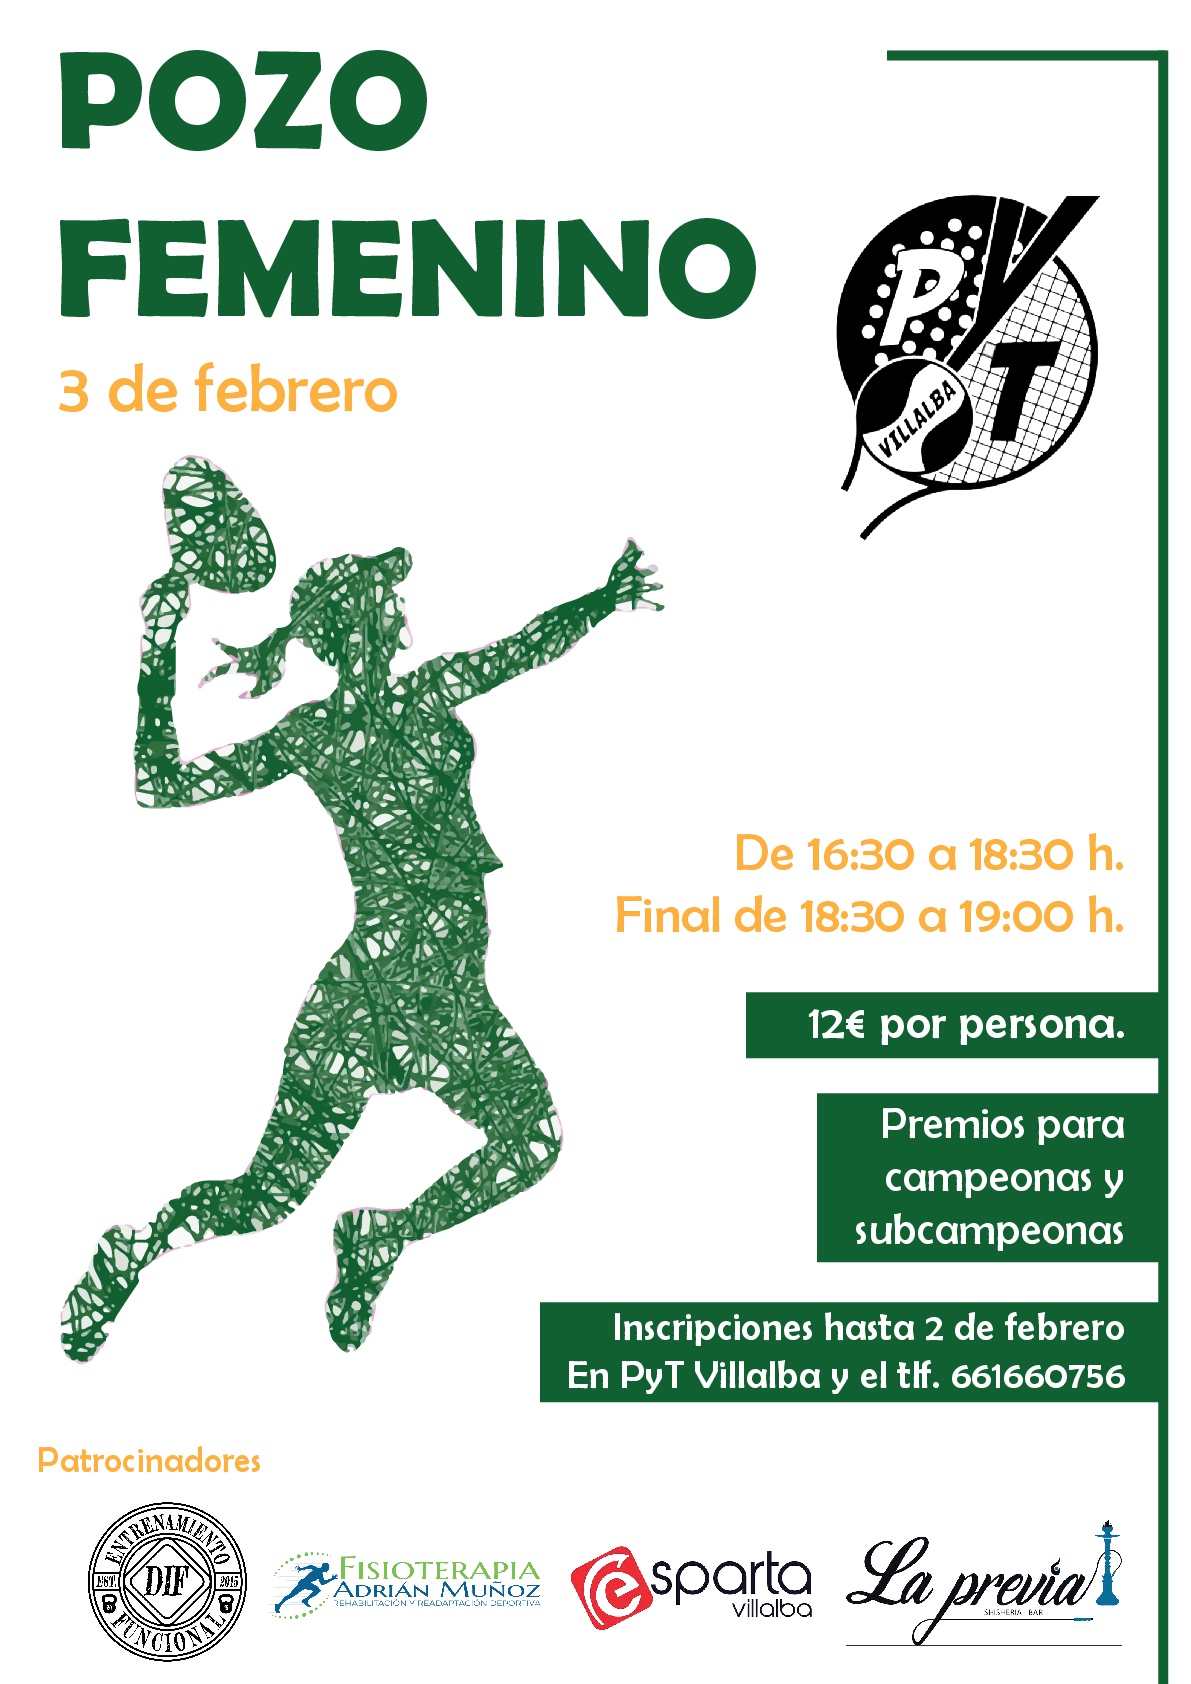 POZO FEMENINO